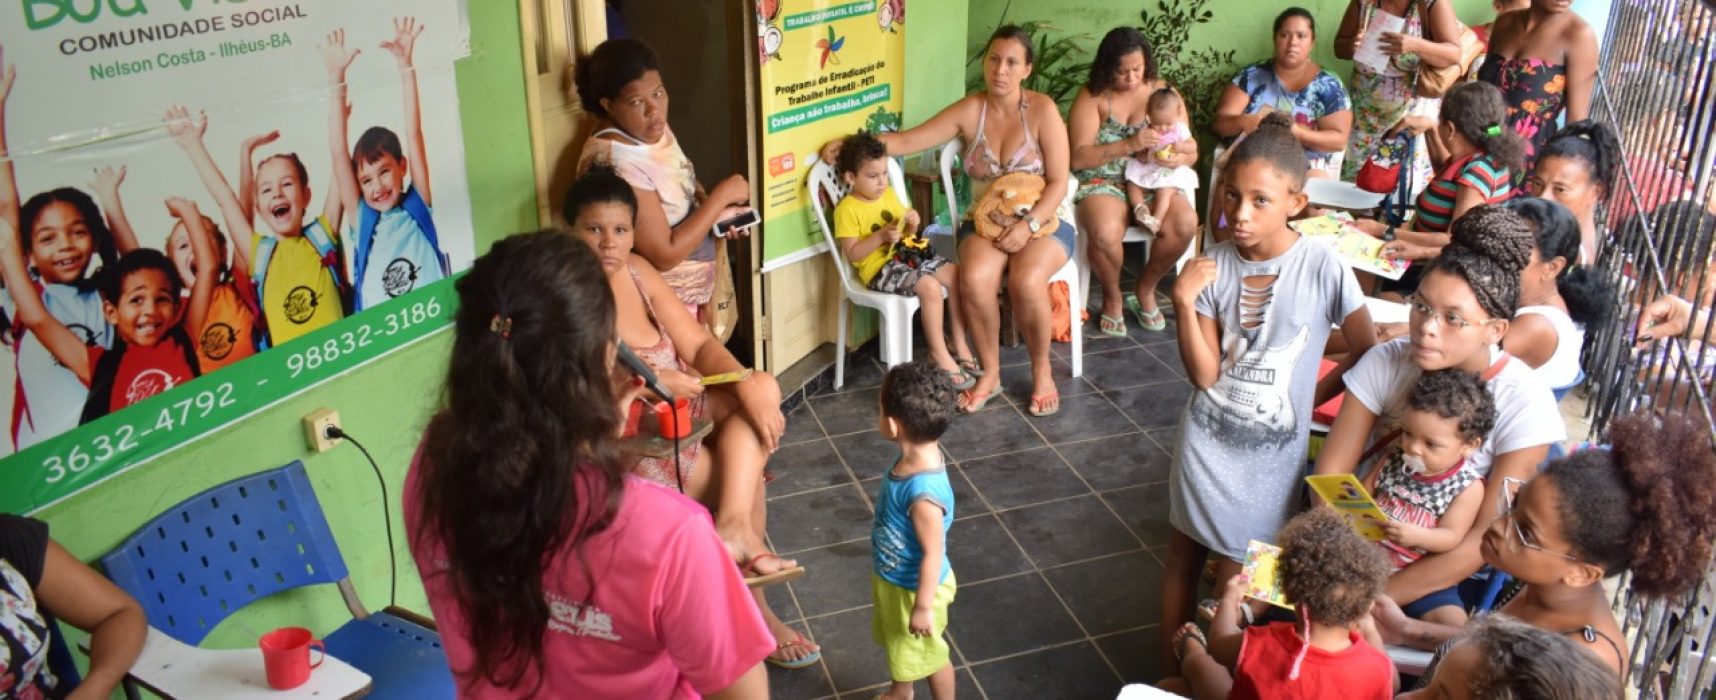 Mutirão Social leva serviços de cidadania à comunidade do Nelson Costa